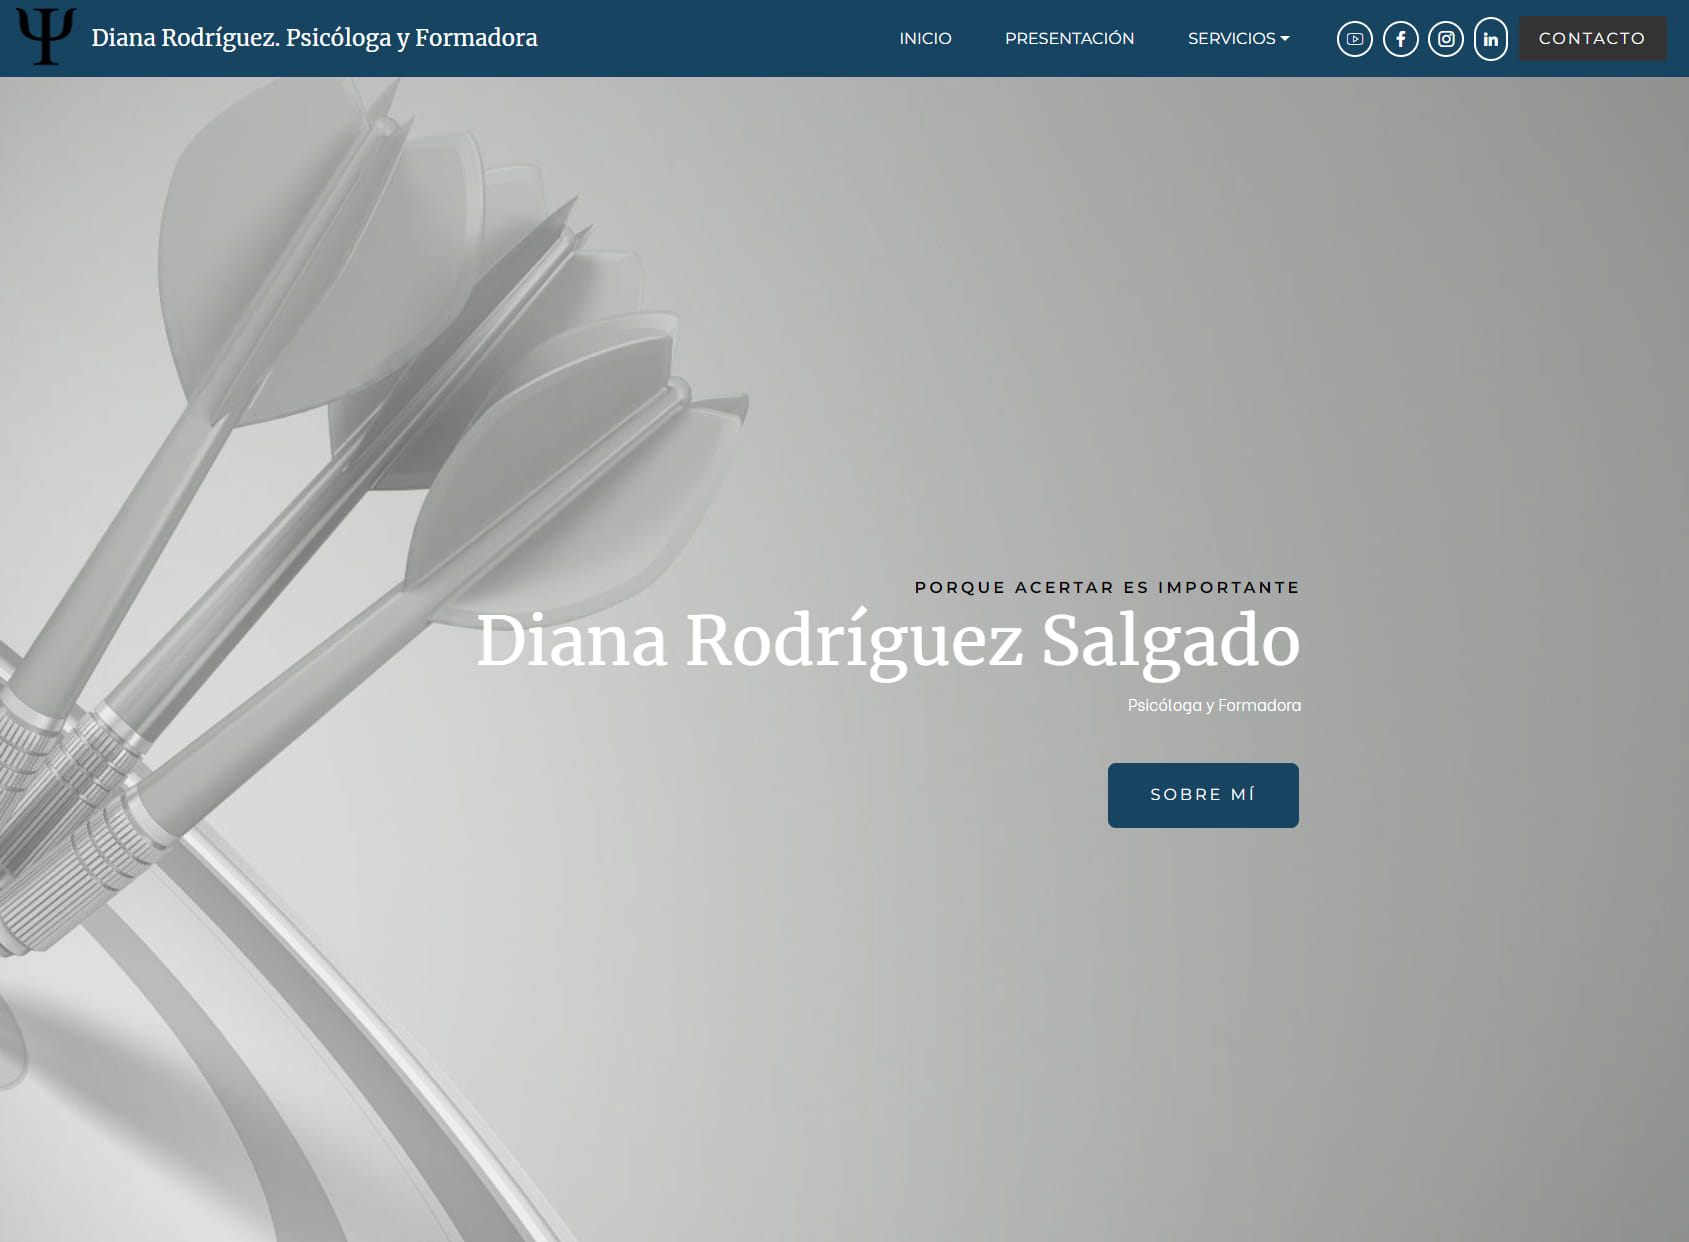 Diana Rodriguez Salgado